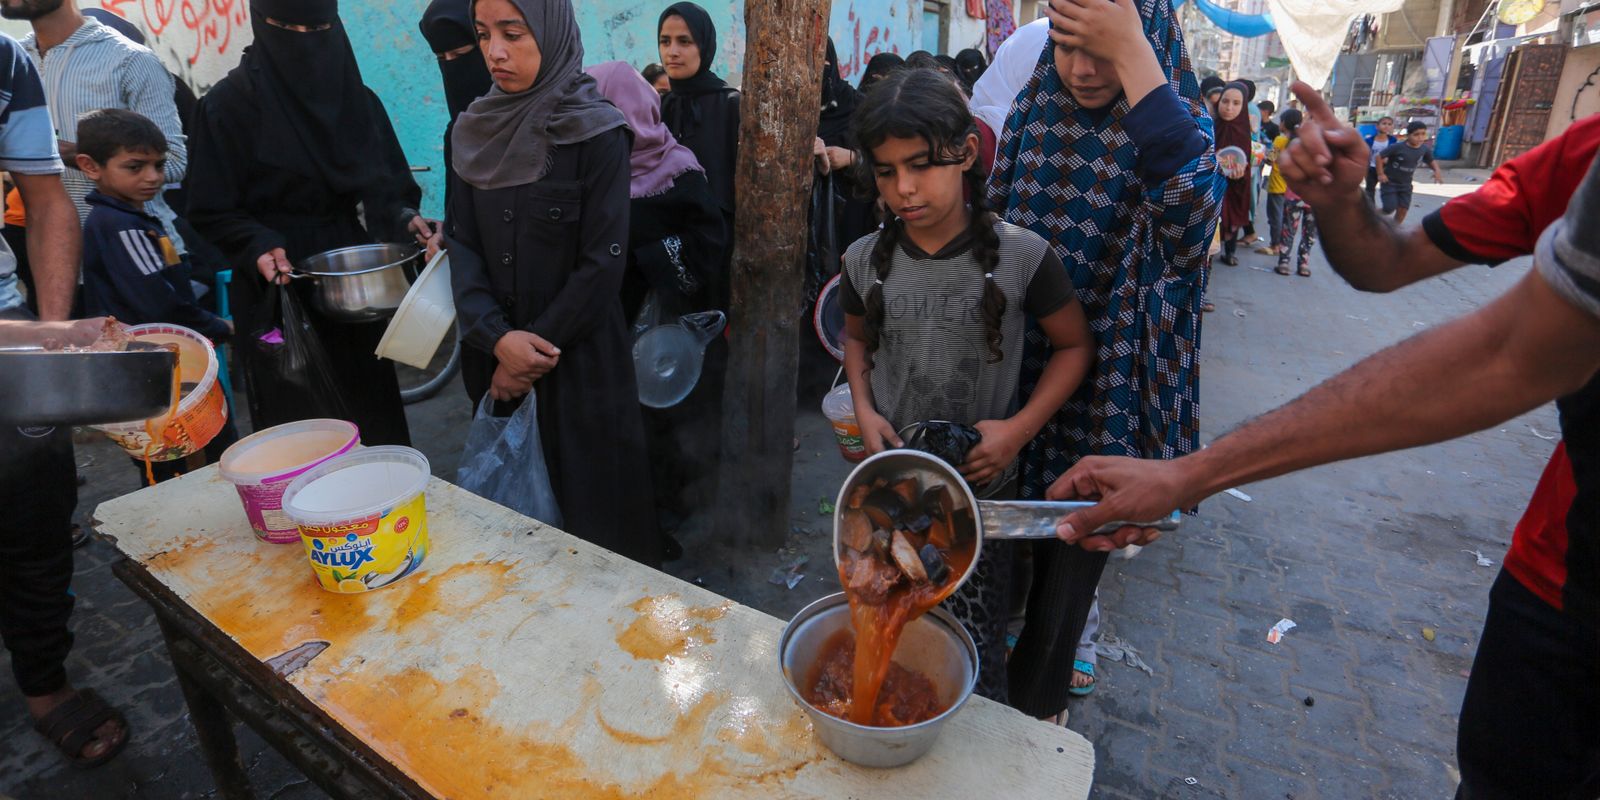 ahmad i gaza: ”barnen ville inte äta hundkött men vi tvingade dem”